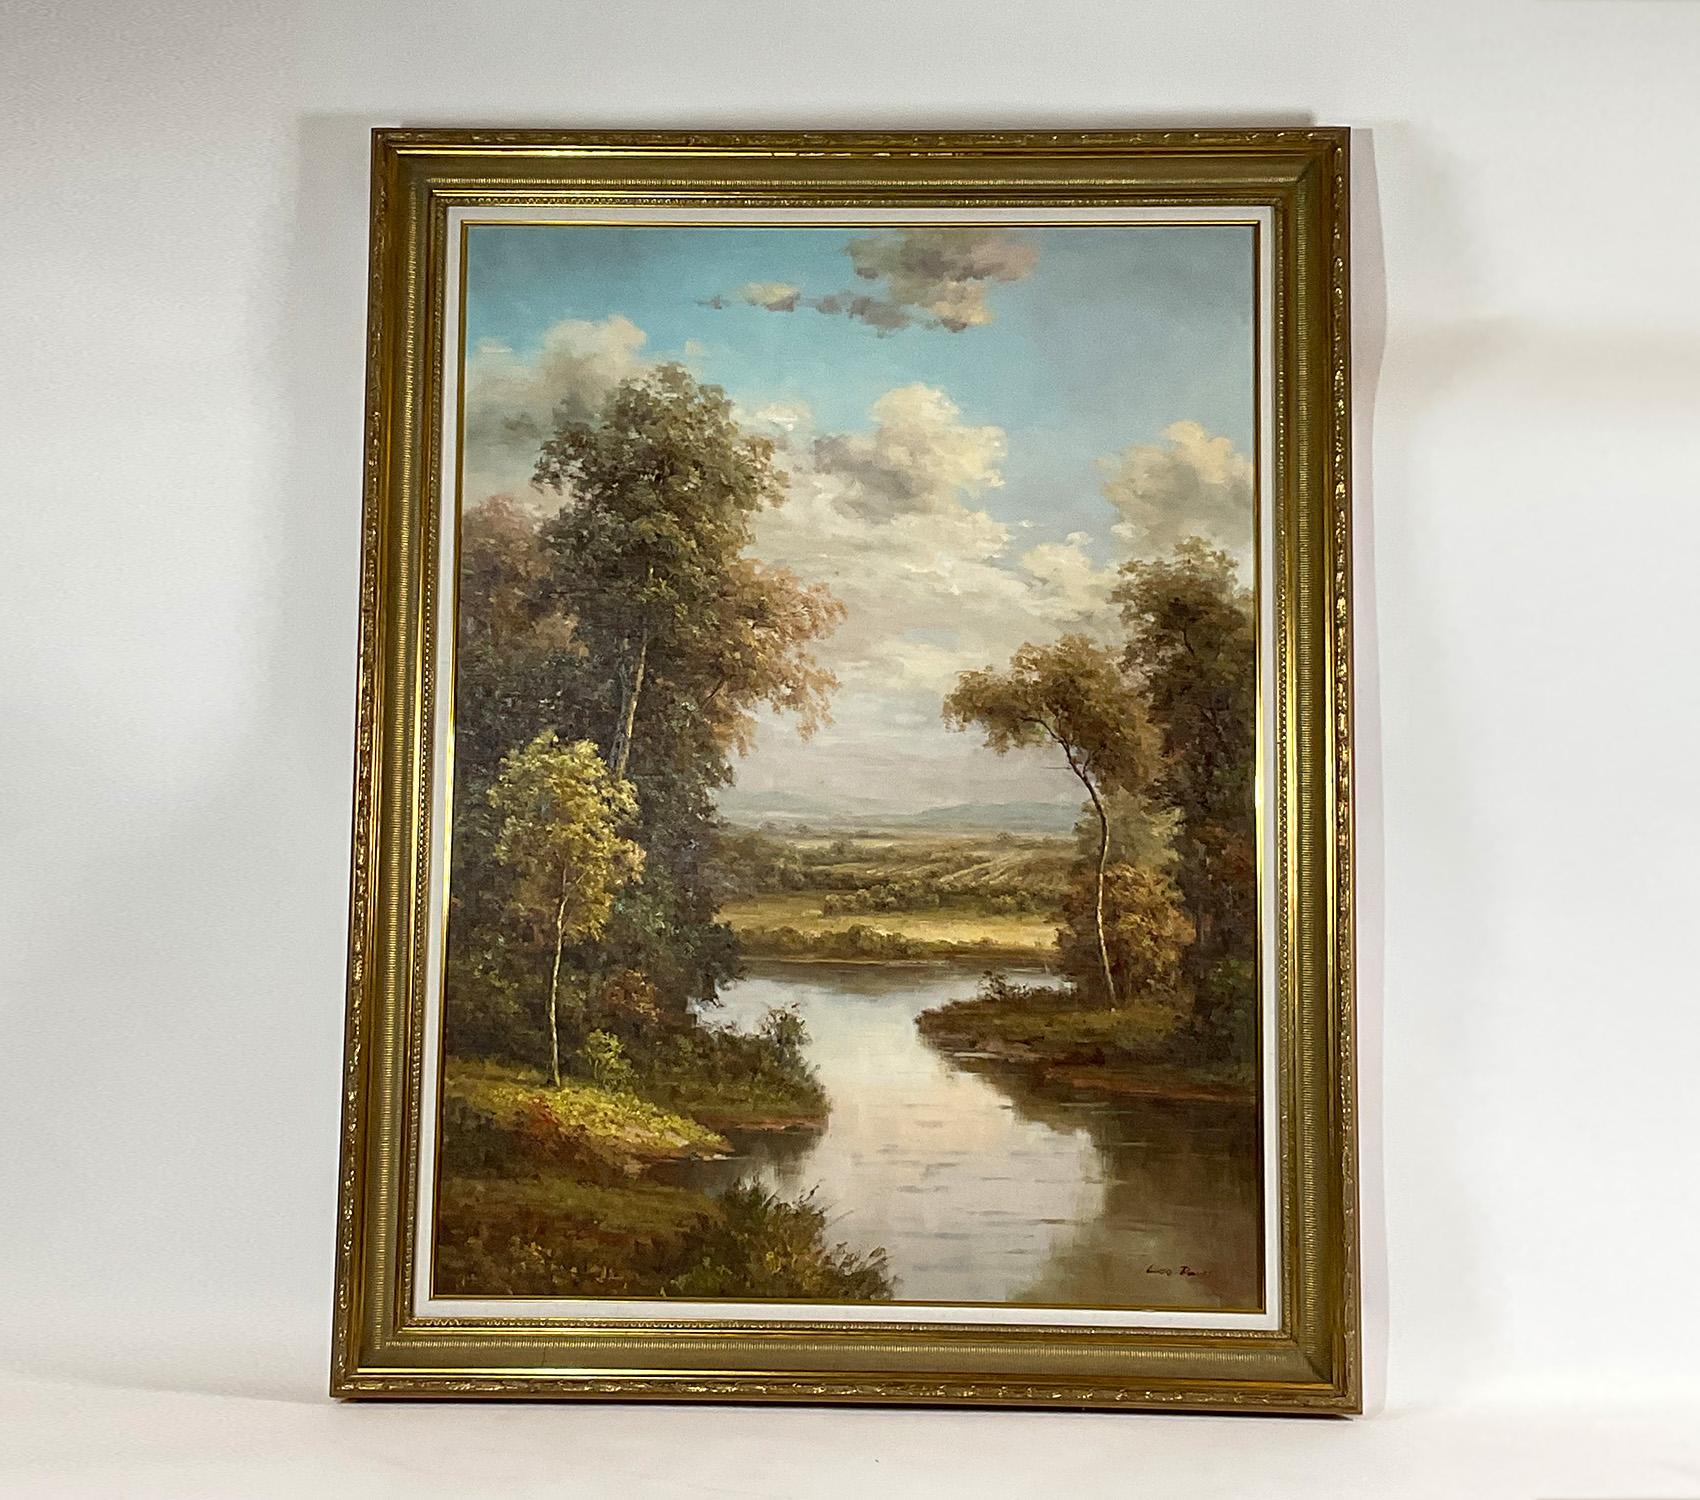 Exceptionnellement grand tableau de paysage à l'huile sur toile représentant un ruisseau ou une rivière. Vingtième siècle. Ils ne sont pas rares, mais simplement décoratifs. Signé Leo Davis.